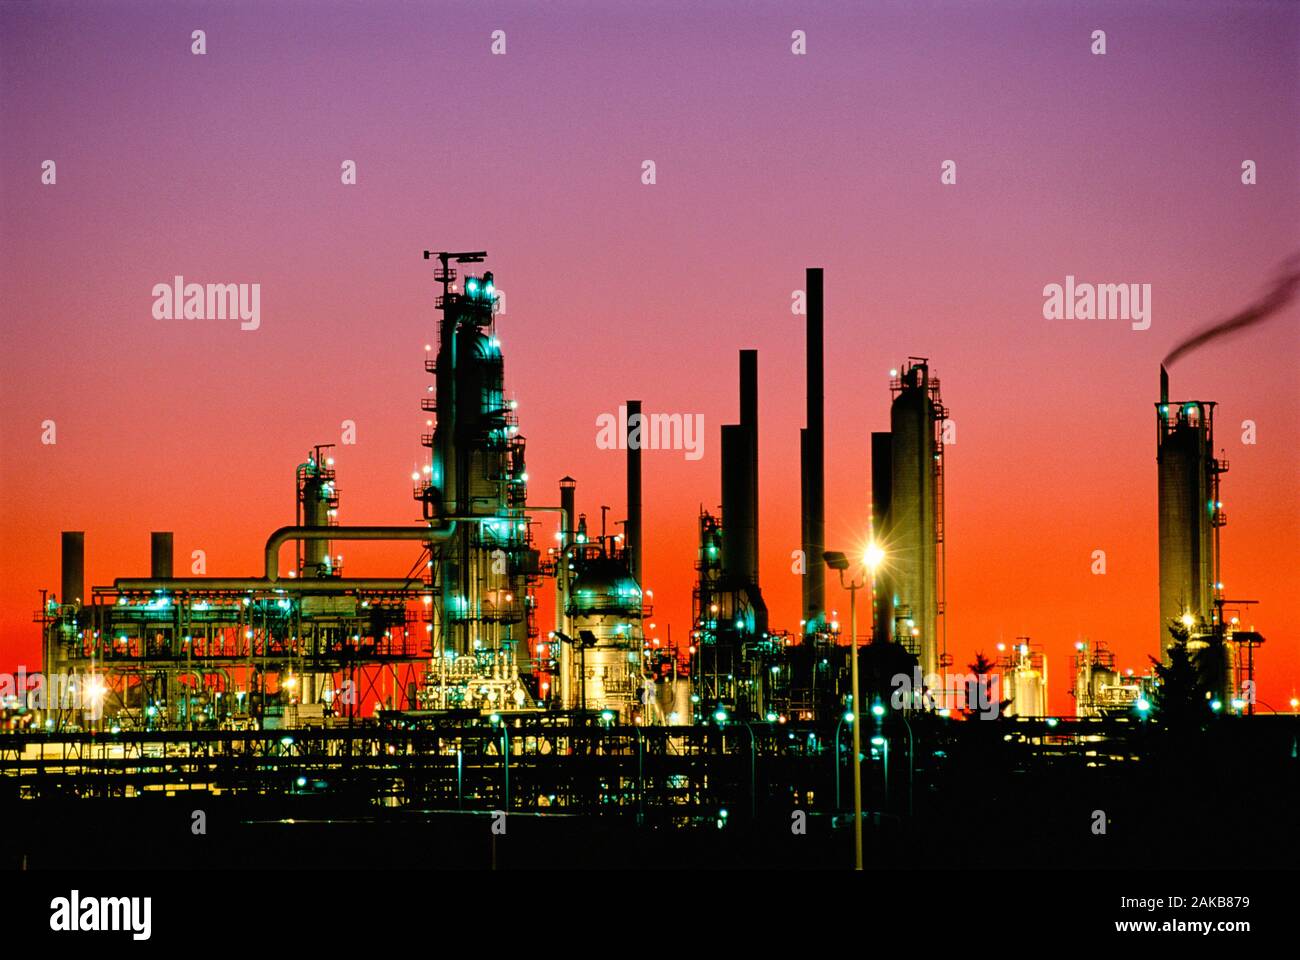 Oil refinery at sunset, Edmonton, Alberta, Canada Stock Photo